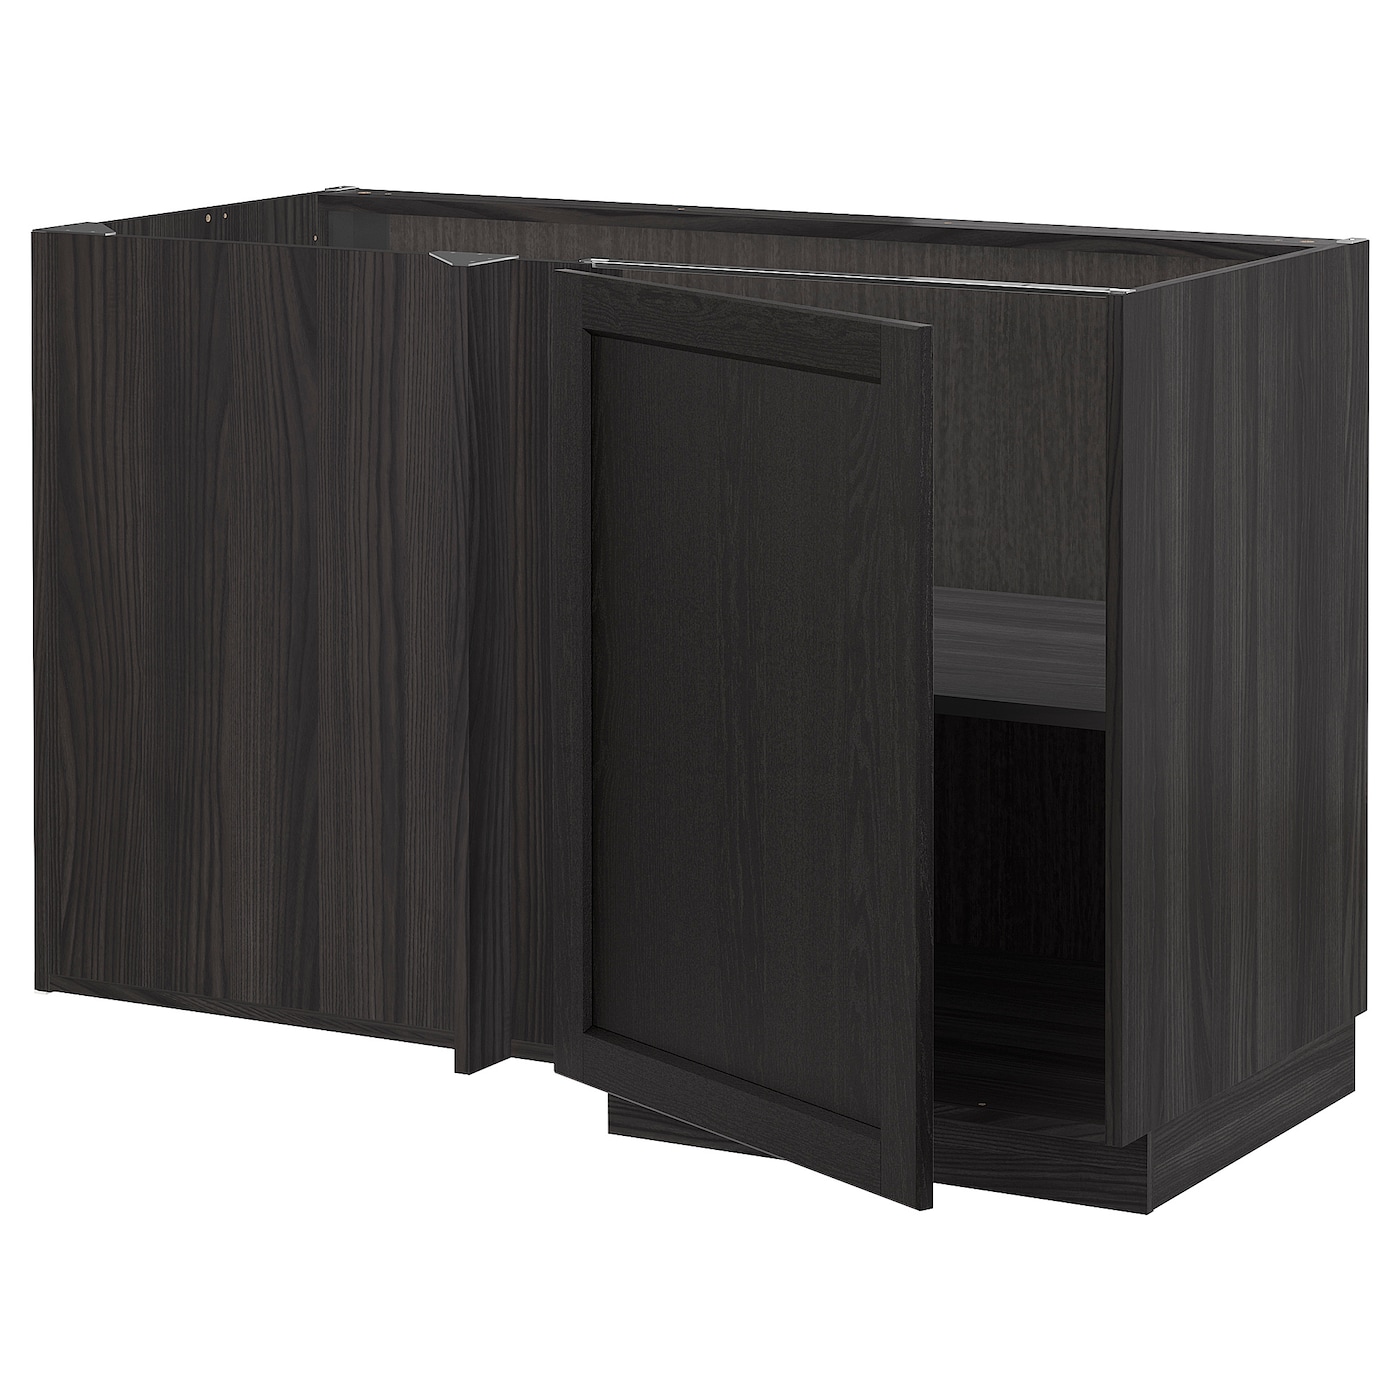 Напольный шкаф - METOD IKEA/ МЕТОД ИКЕА,  128х68 см, темно-коричневый